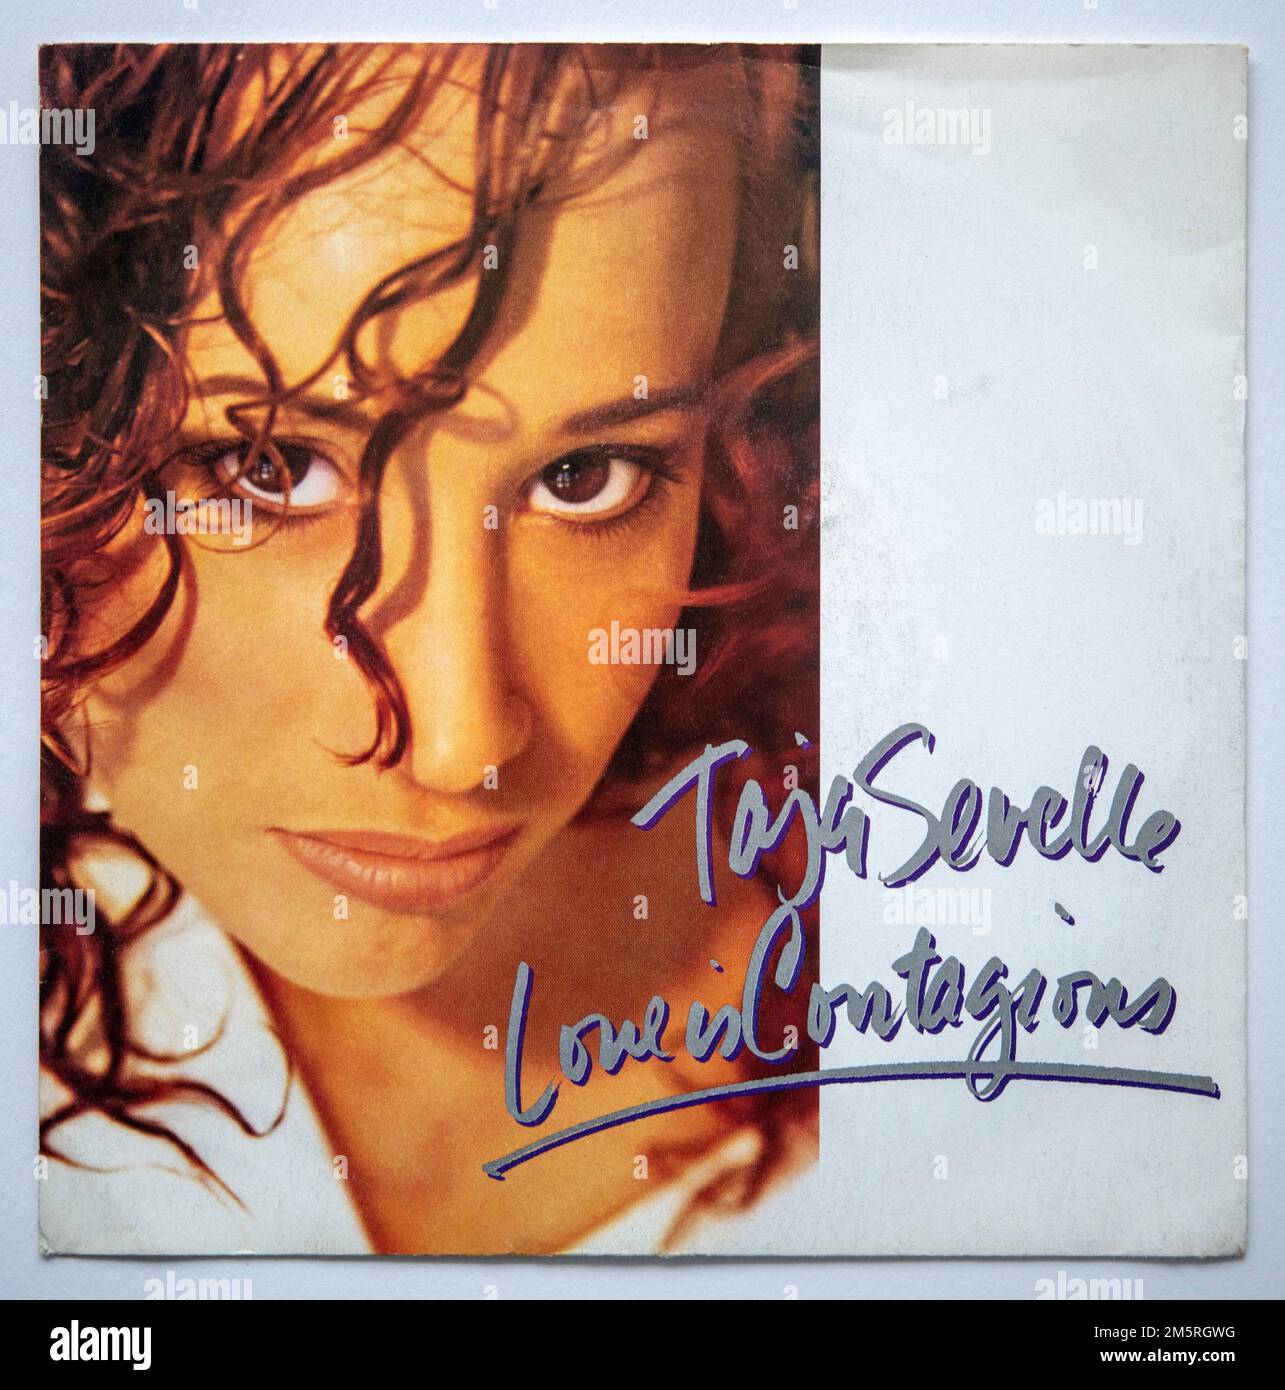 Bildcover der 7 cm großen Einzelversion von „Love is contagious“ von Taja Sevelle, die 1987 veröffentlicht wurde Stockfoto